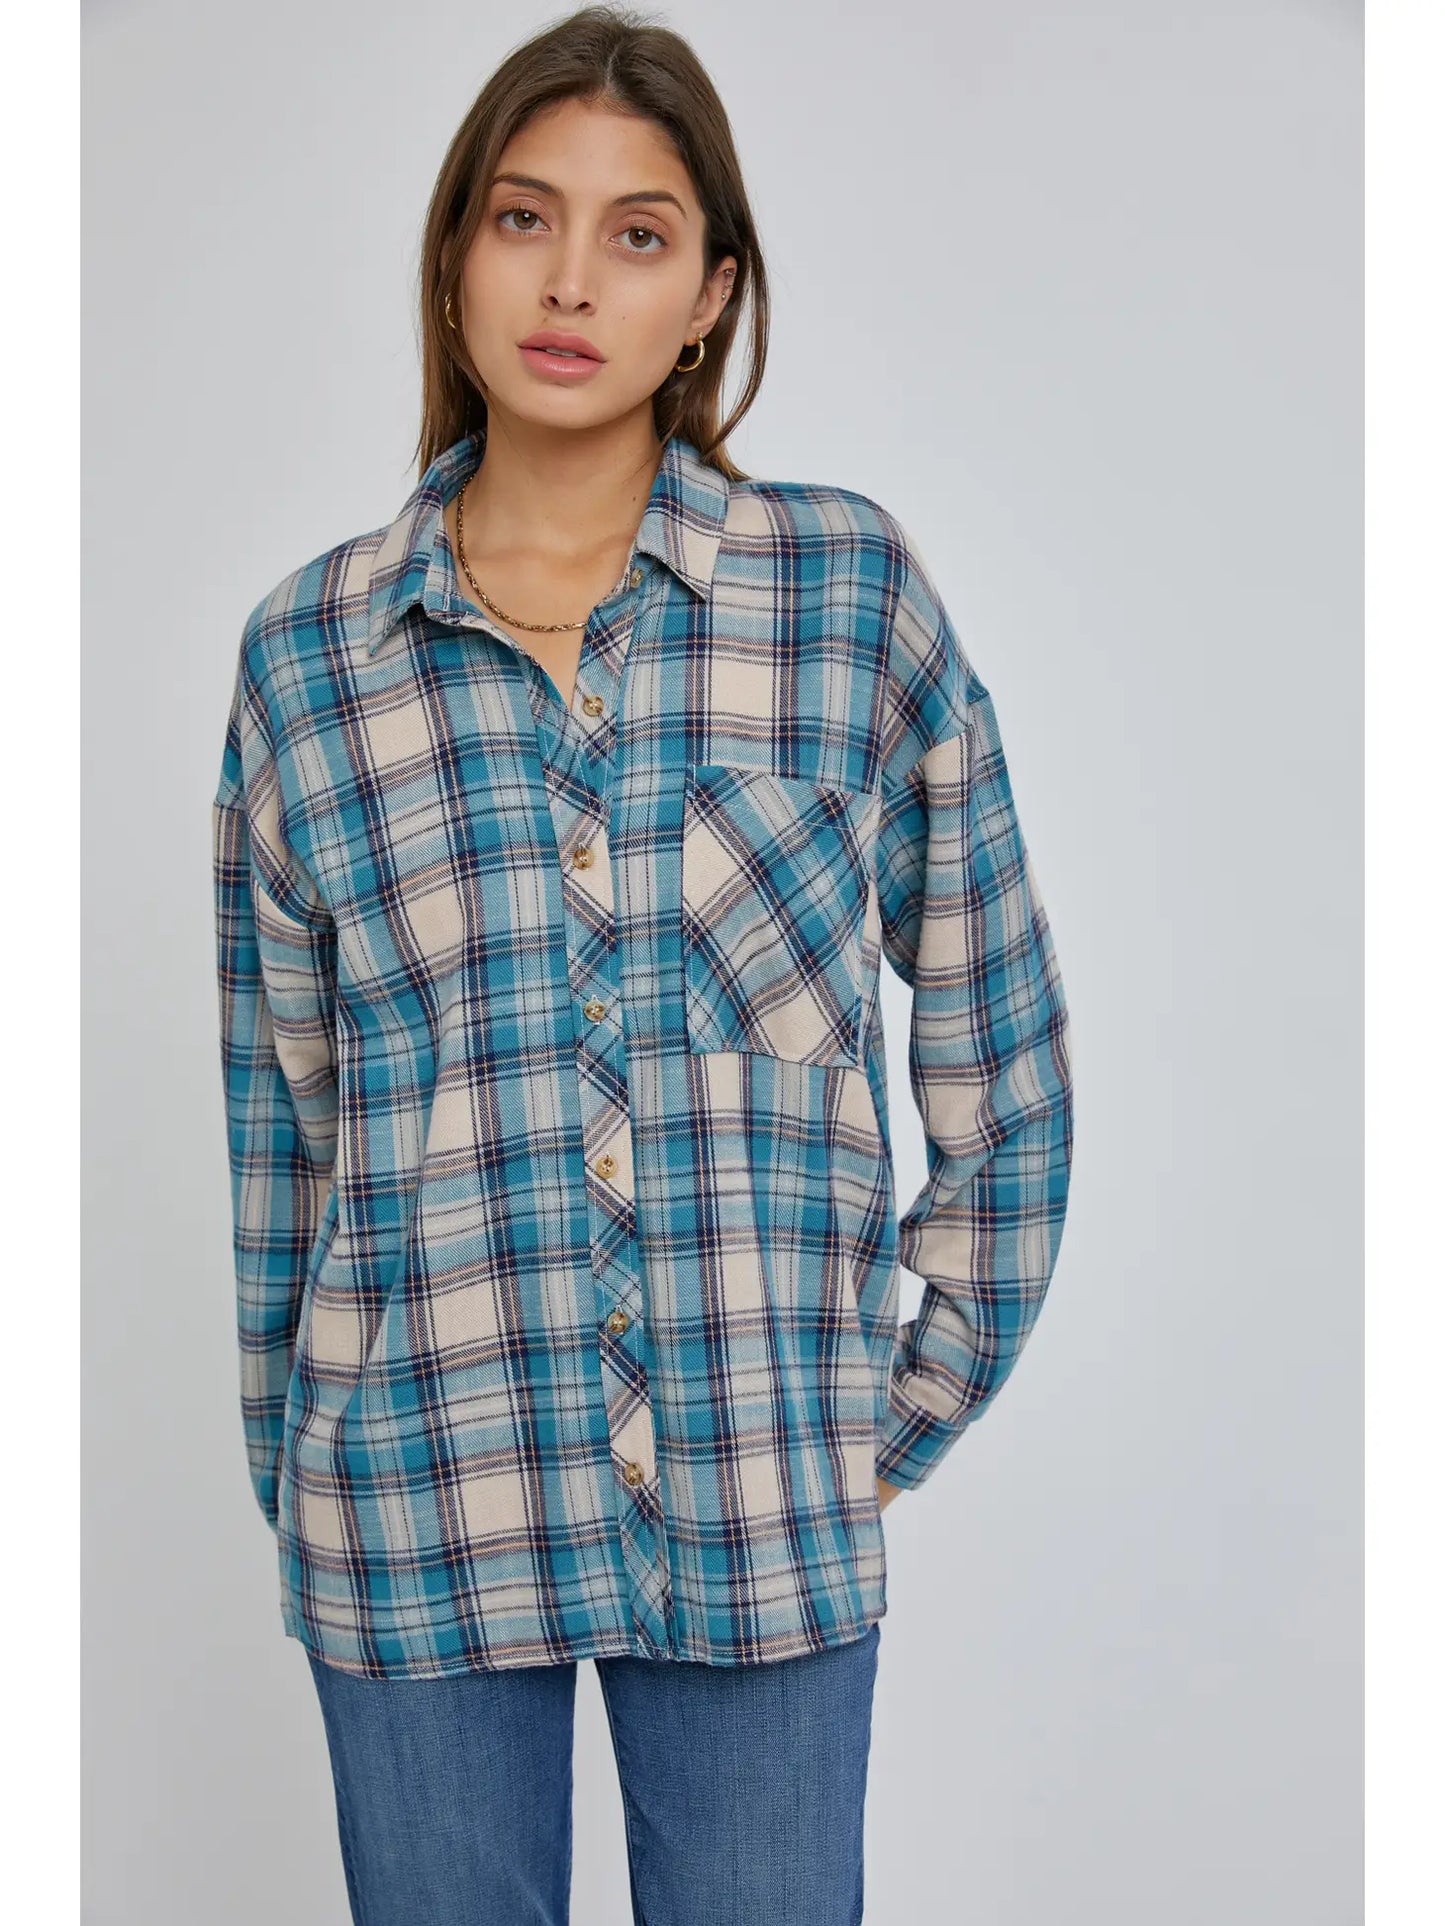 Oversized Boyfriend Flannel Shirt